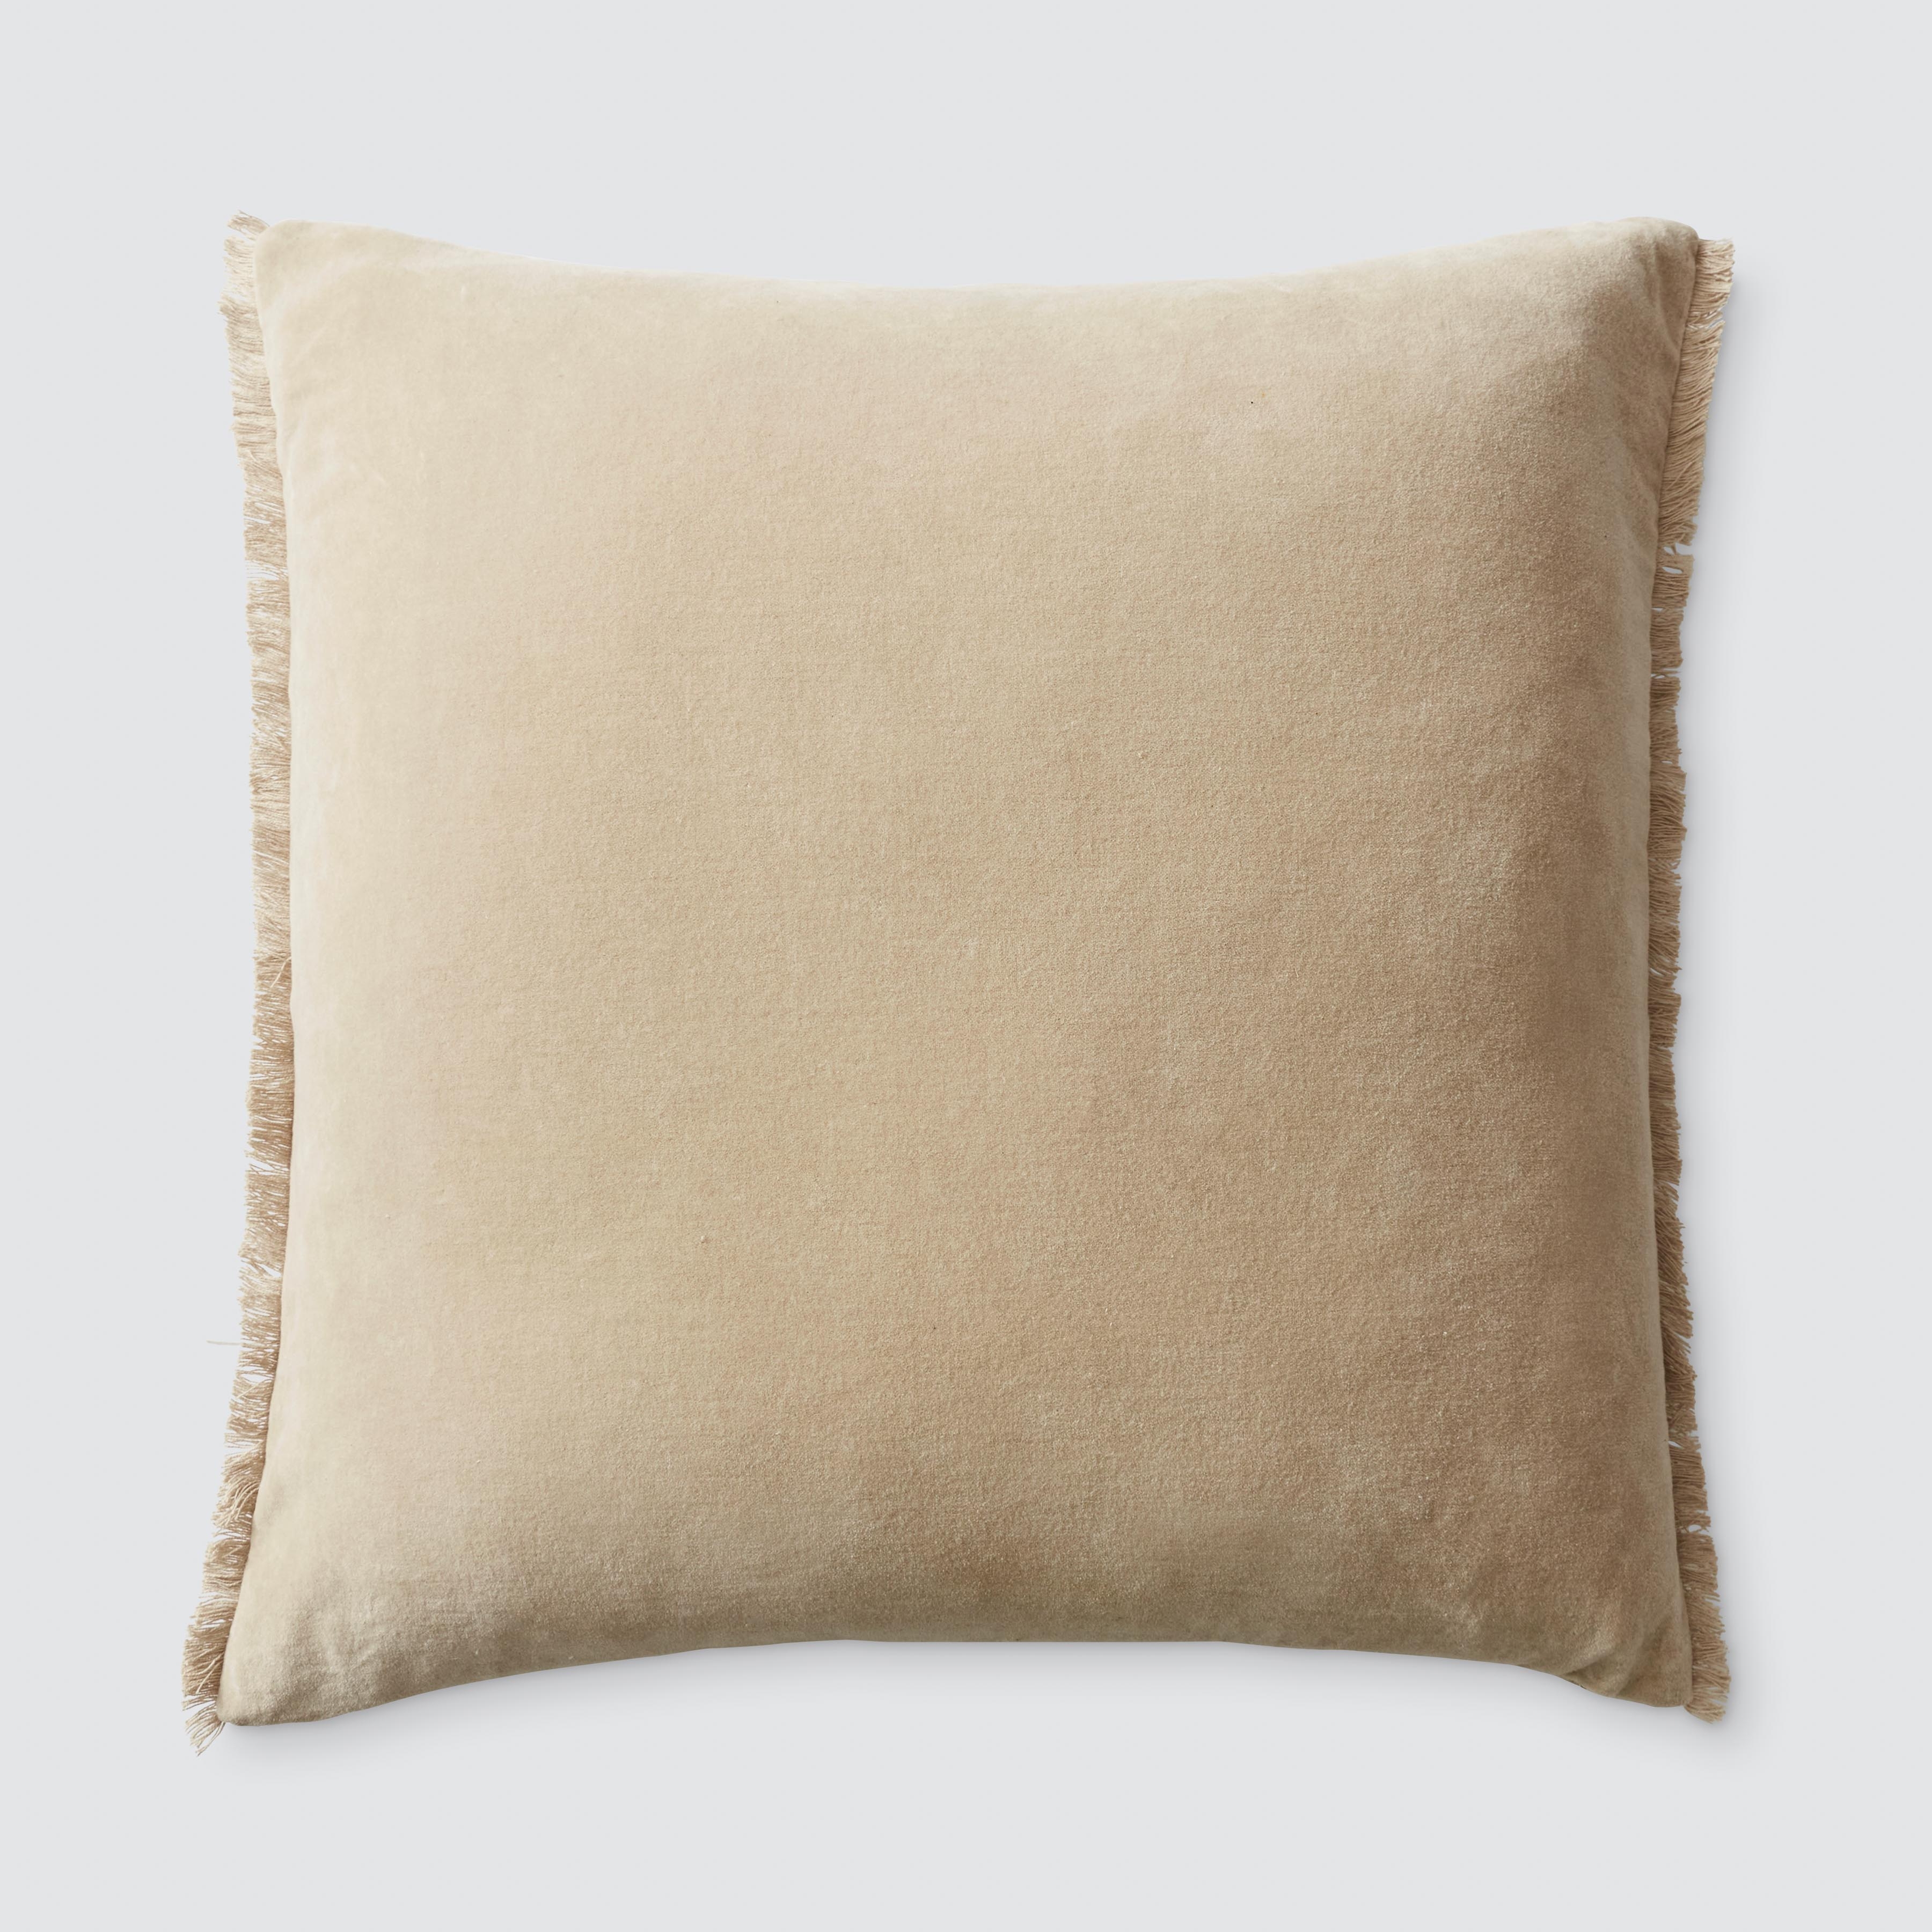 The Citizenry Naveta Velvet Pillow | 18" x 18" | Camel - Image 9